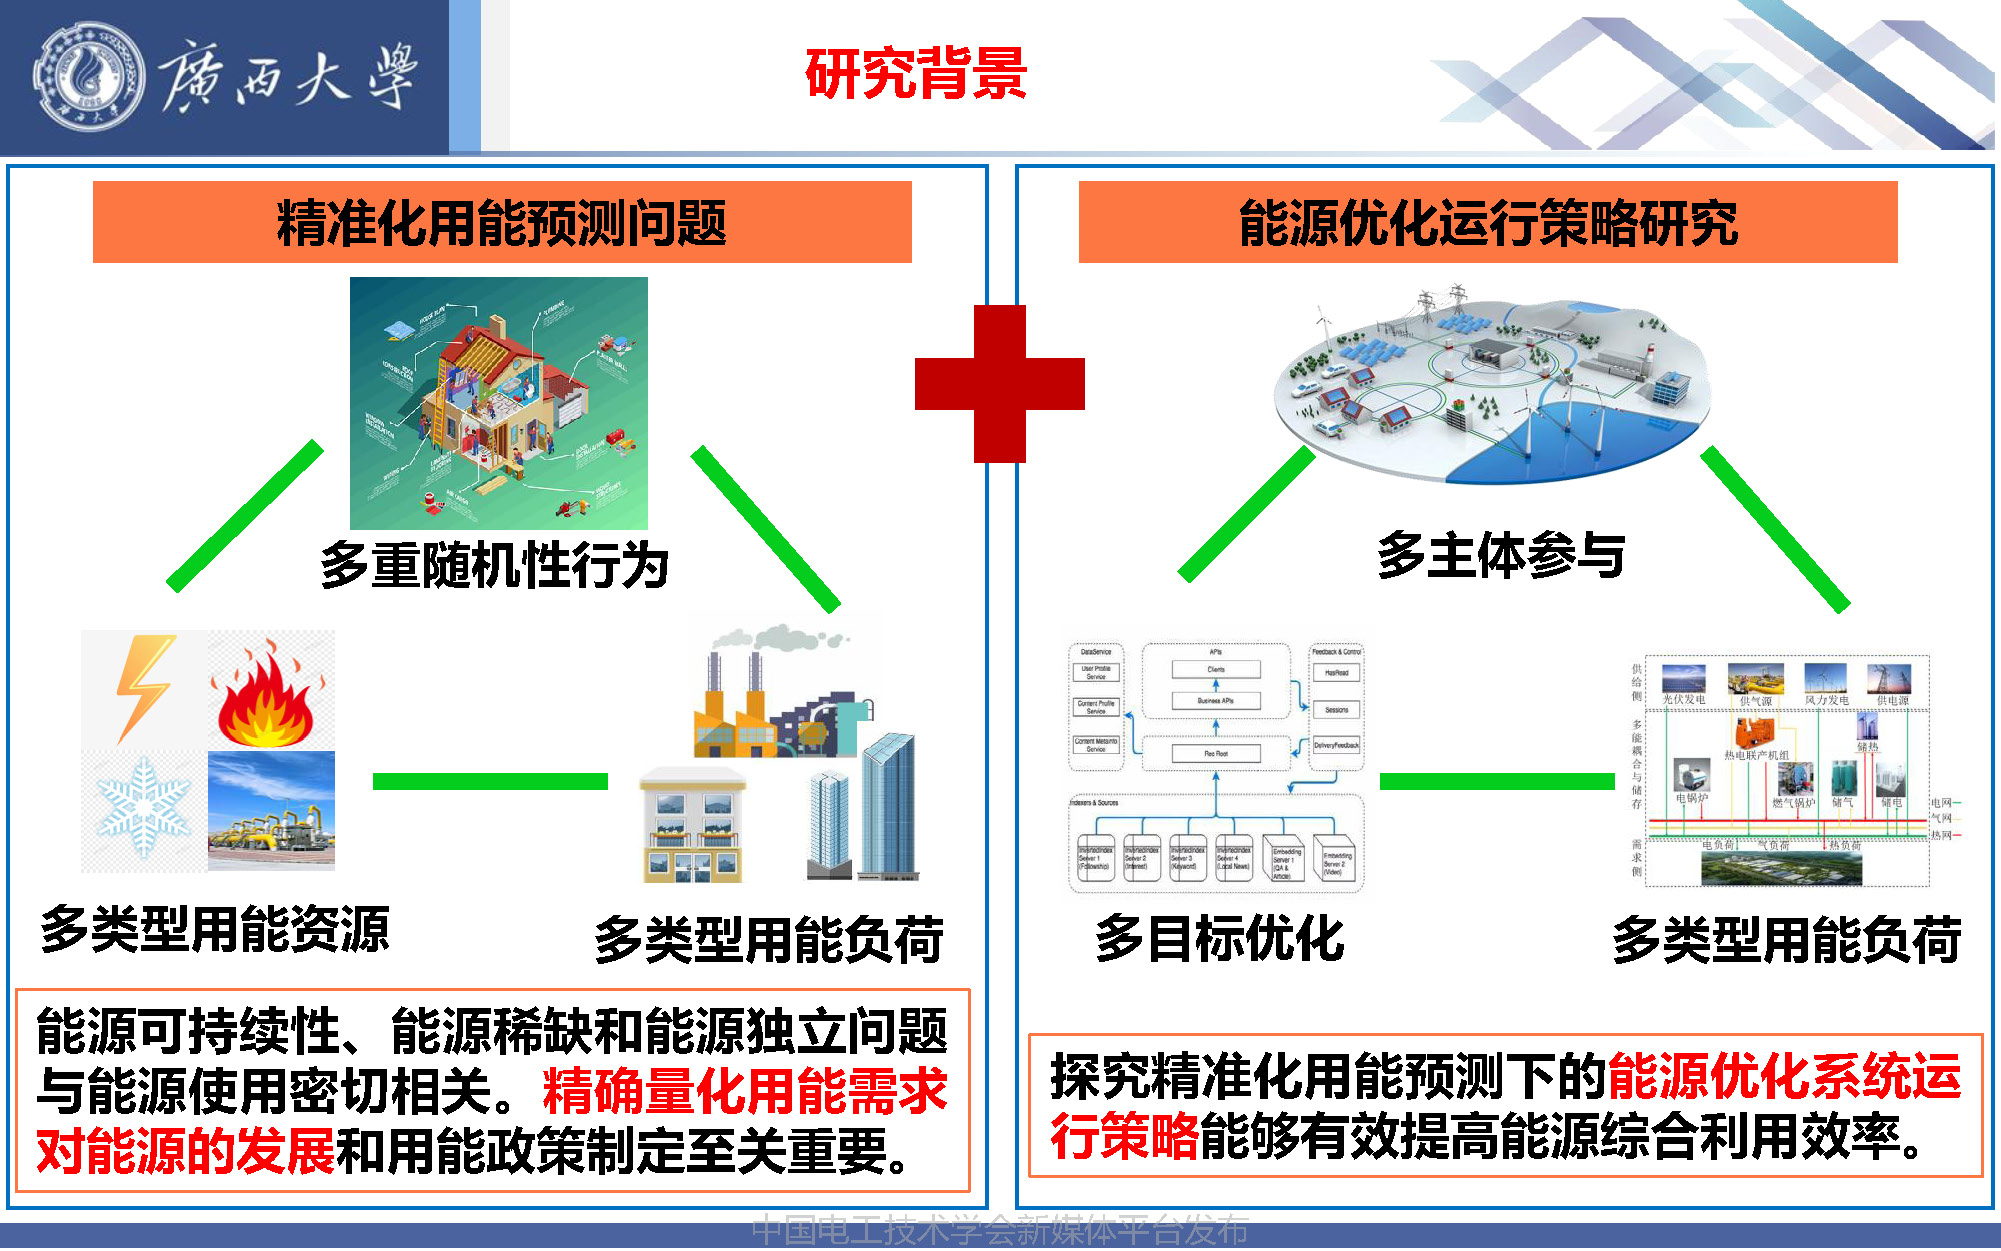 广西大学张冬冬副教授：智慧园区用能预测与综合能源的多目标优化